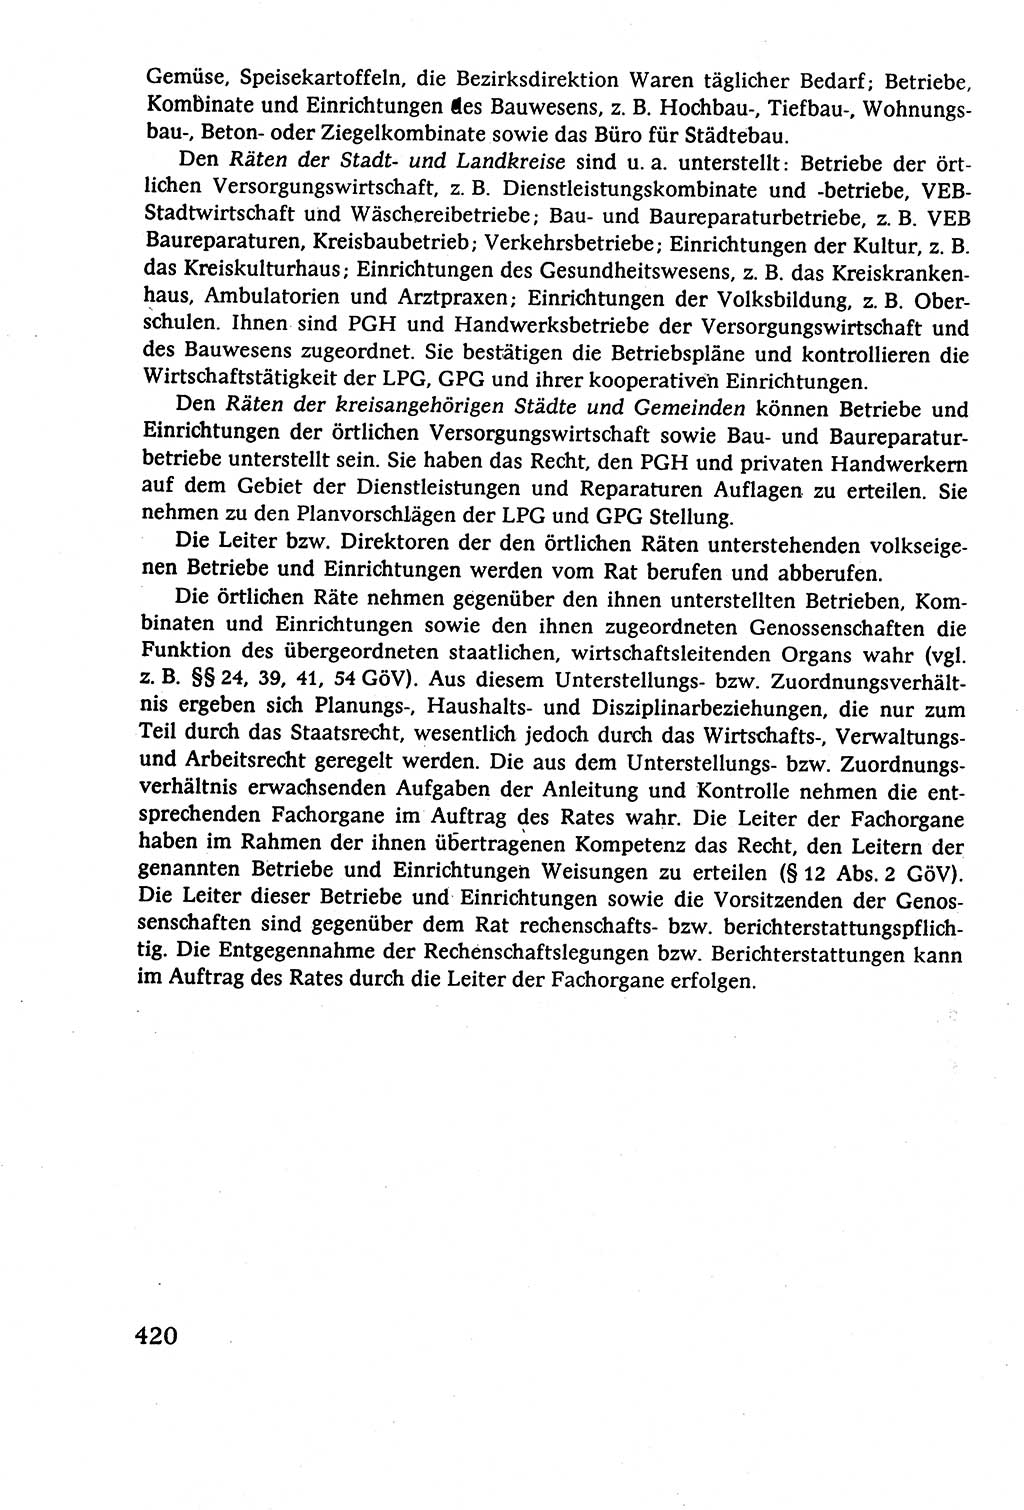 Staatsrecht der DDR (Deutsche Demokratische Republik), Lehrbuch 1977, Seite 420 (St.-R. DDR Lb. 1977, S. 420)